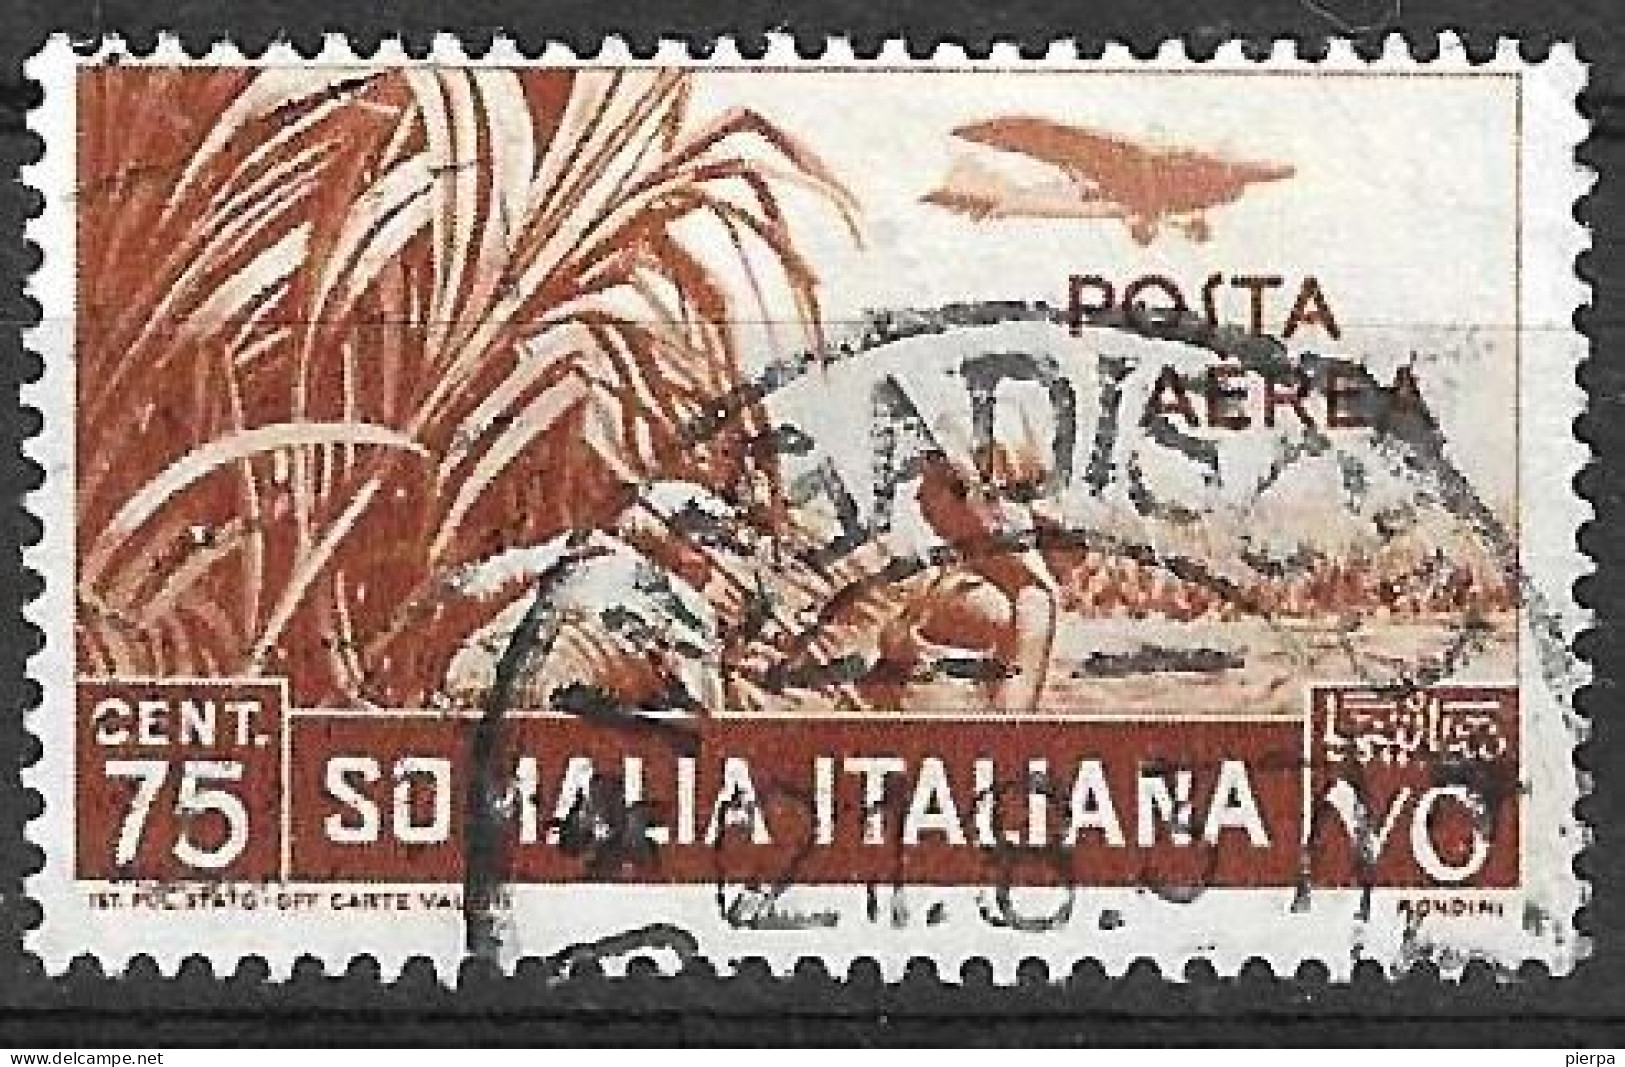 SOMALIA - 1936 - POSTA AEREA - CENT. 75 - USATO (YVERT AV 21 - MICHEL 236 - SS A 20) - Somalia